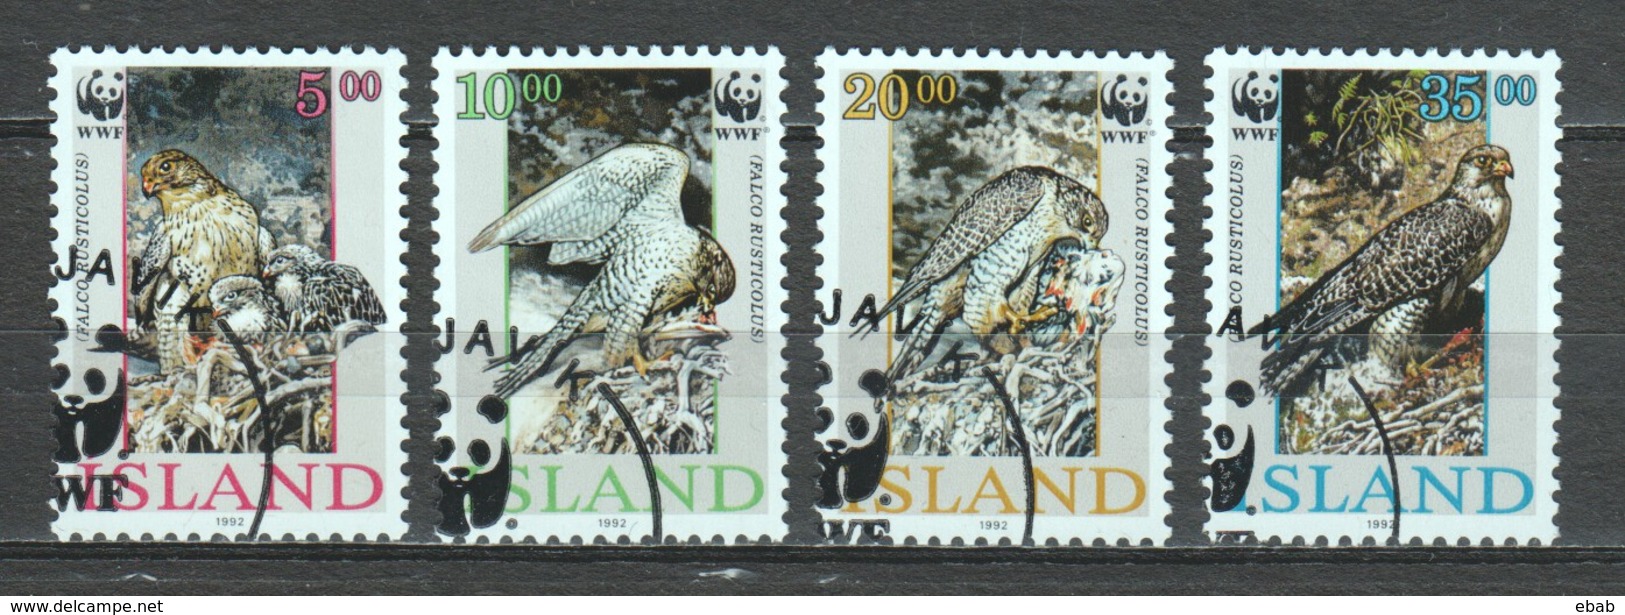 Iceland Island 1992 Mi 776-779 WWF BIRDS OF PREY - Used Stamps